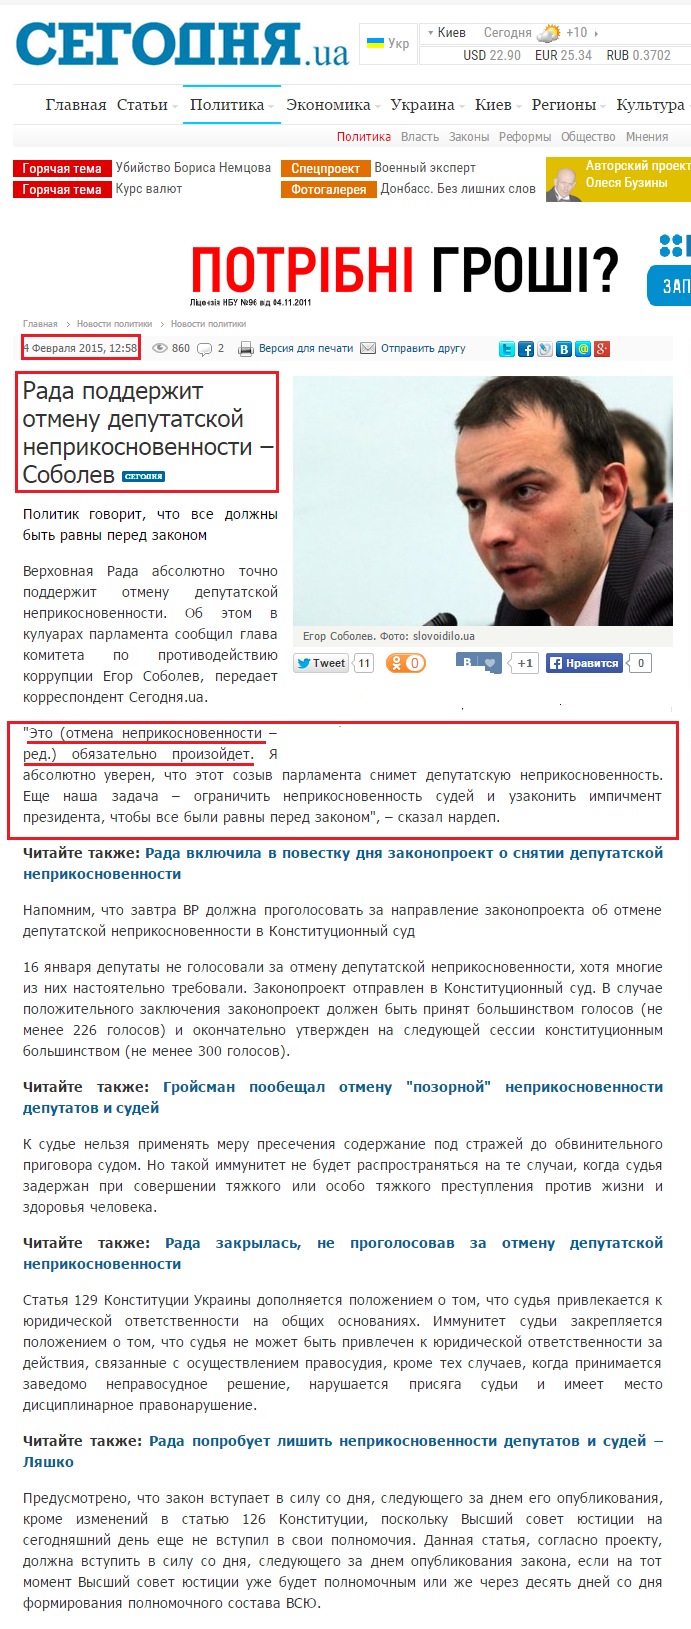 http://www.segodnya.ua/politics/pnews/rada-podderzhit-otmenu-deputatskoy-neprikosnovennosti-sobolev-589663.html